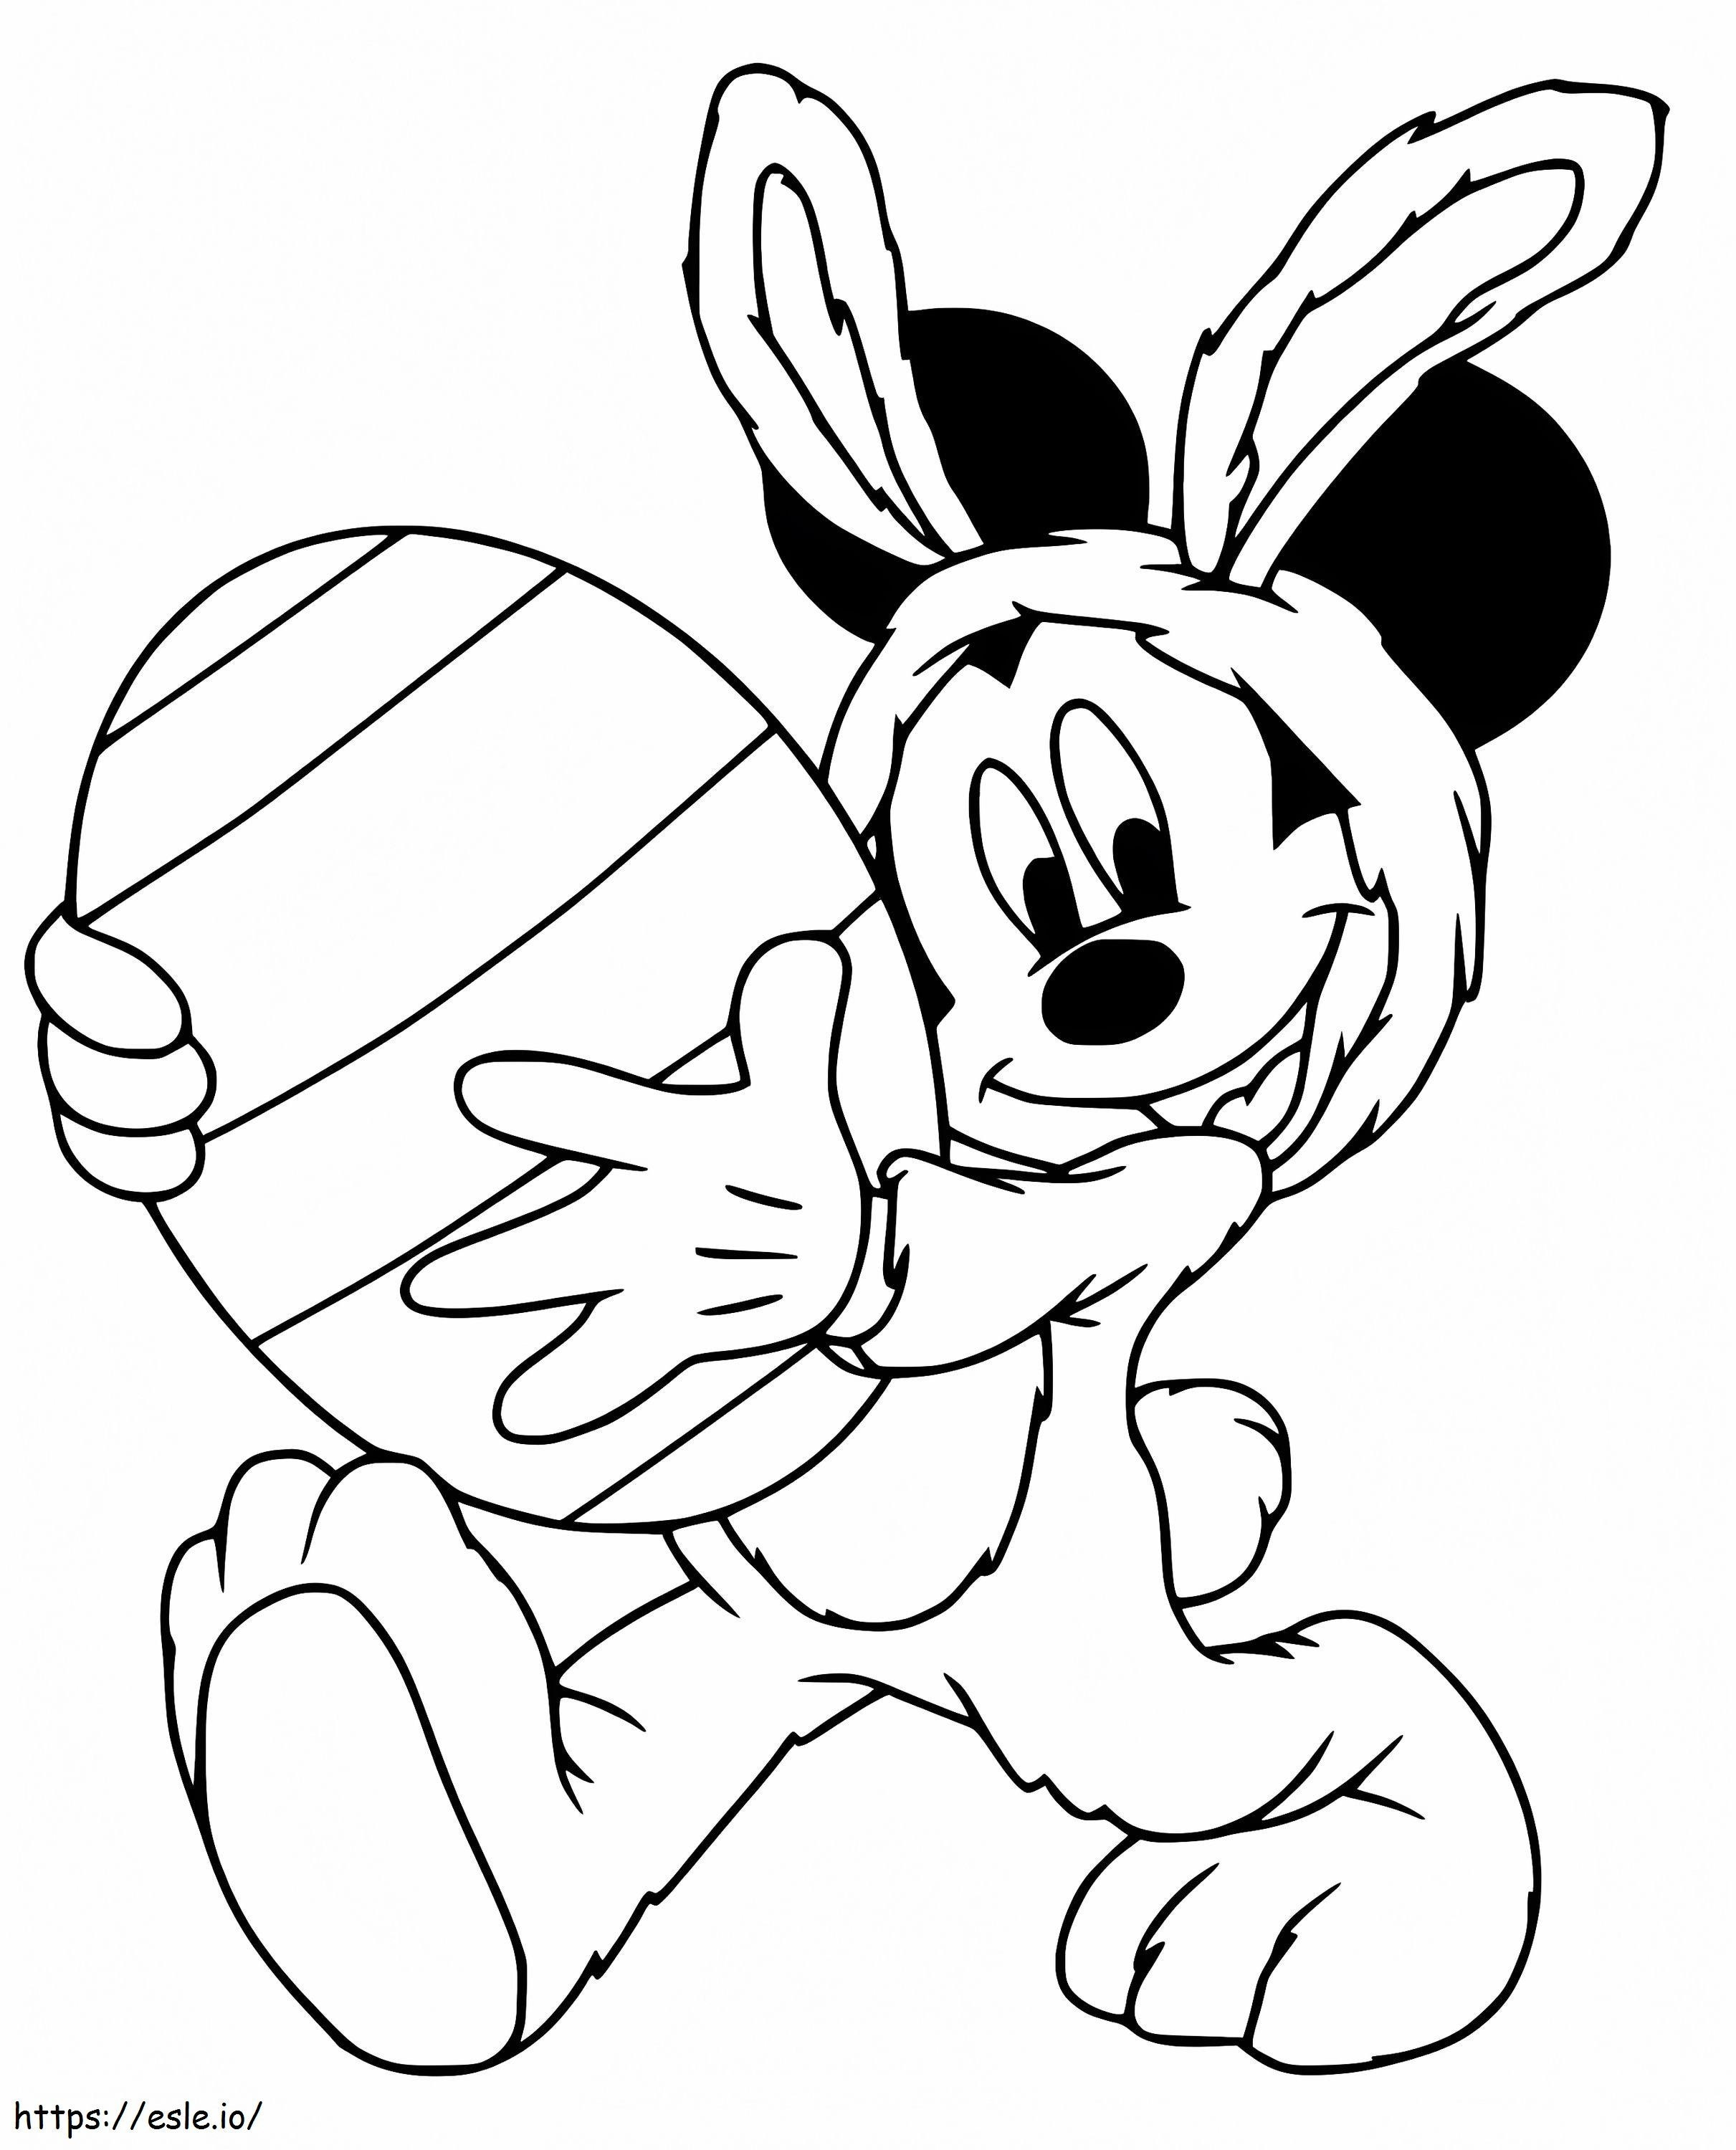 Coloriage Mickey Mouse avec un gros oeuf de Pâques à imprimer dessin